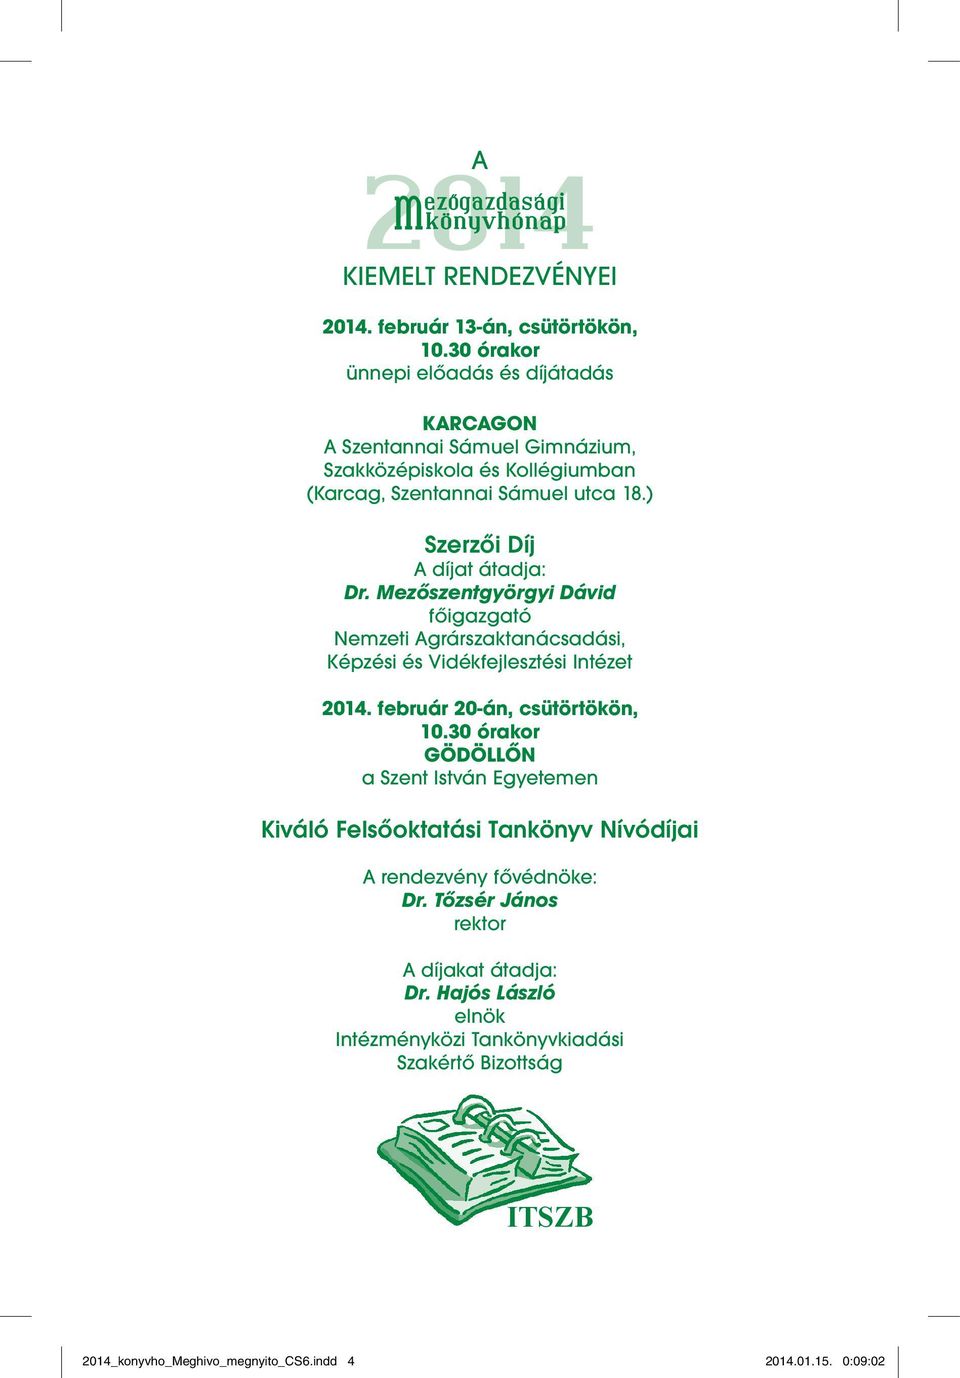 Mezőszentgyörgyi Dávid főigazgató Nemzeti Agrárszaktanácsadási, Képzési és Vidékfejlesztési Intézet 2014. február 20-án, csütörtökön, 10.